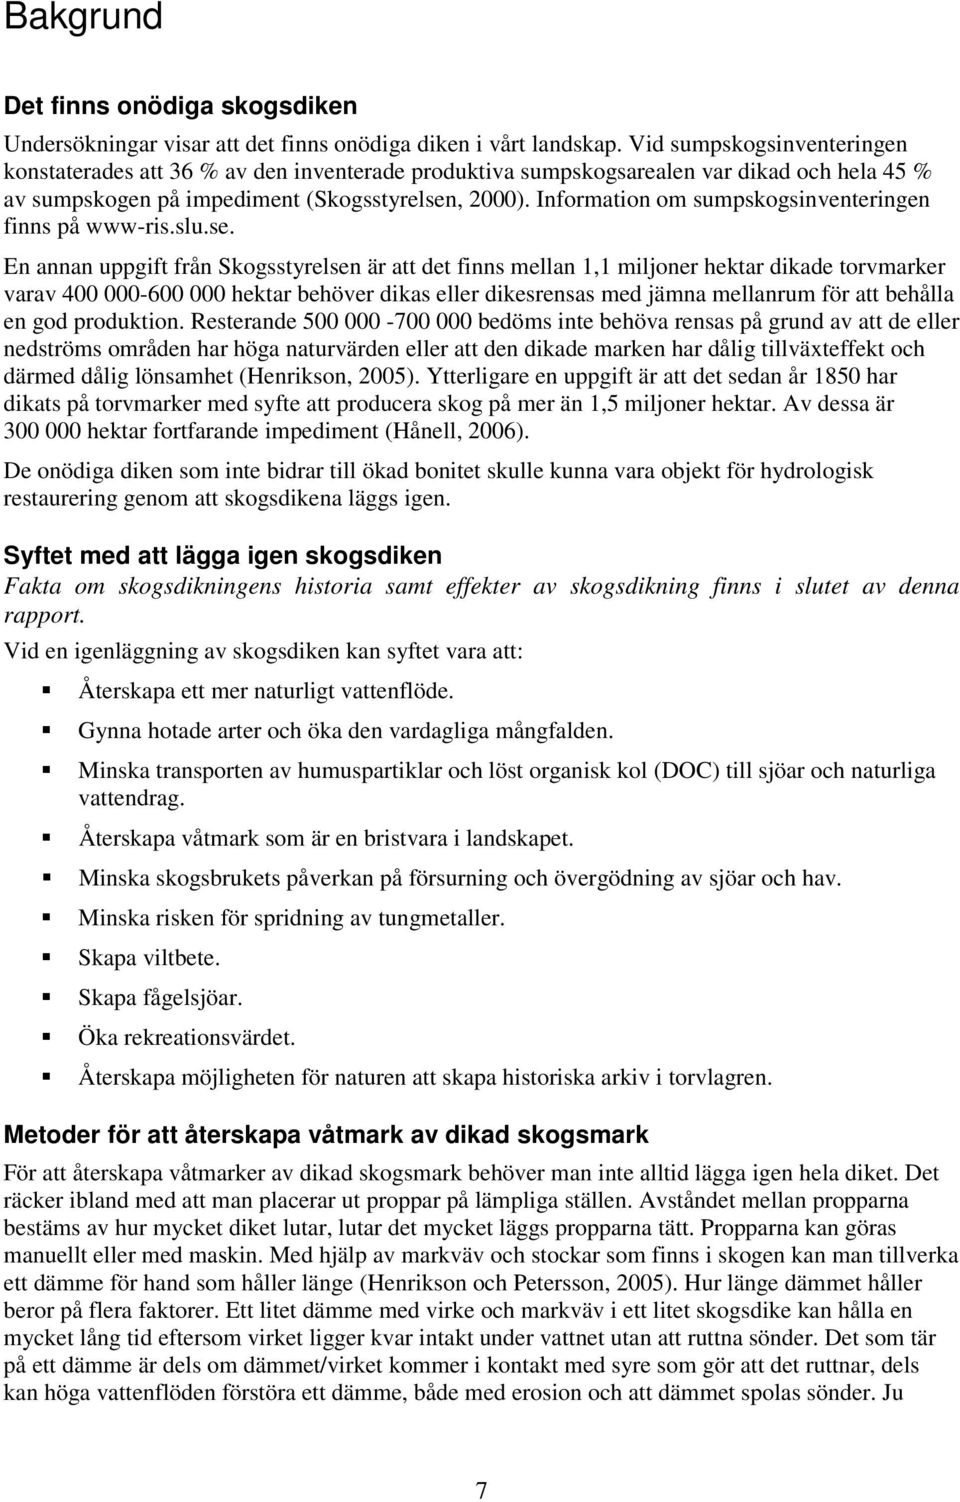 Information om sumpskogsinventeringen finns på www-ris.slu.se.